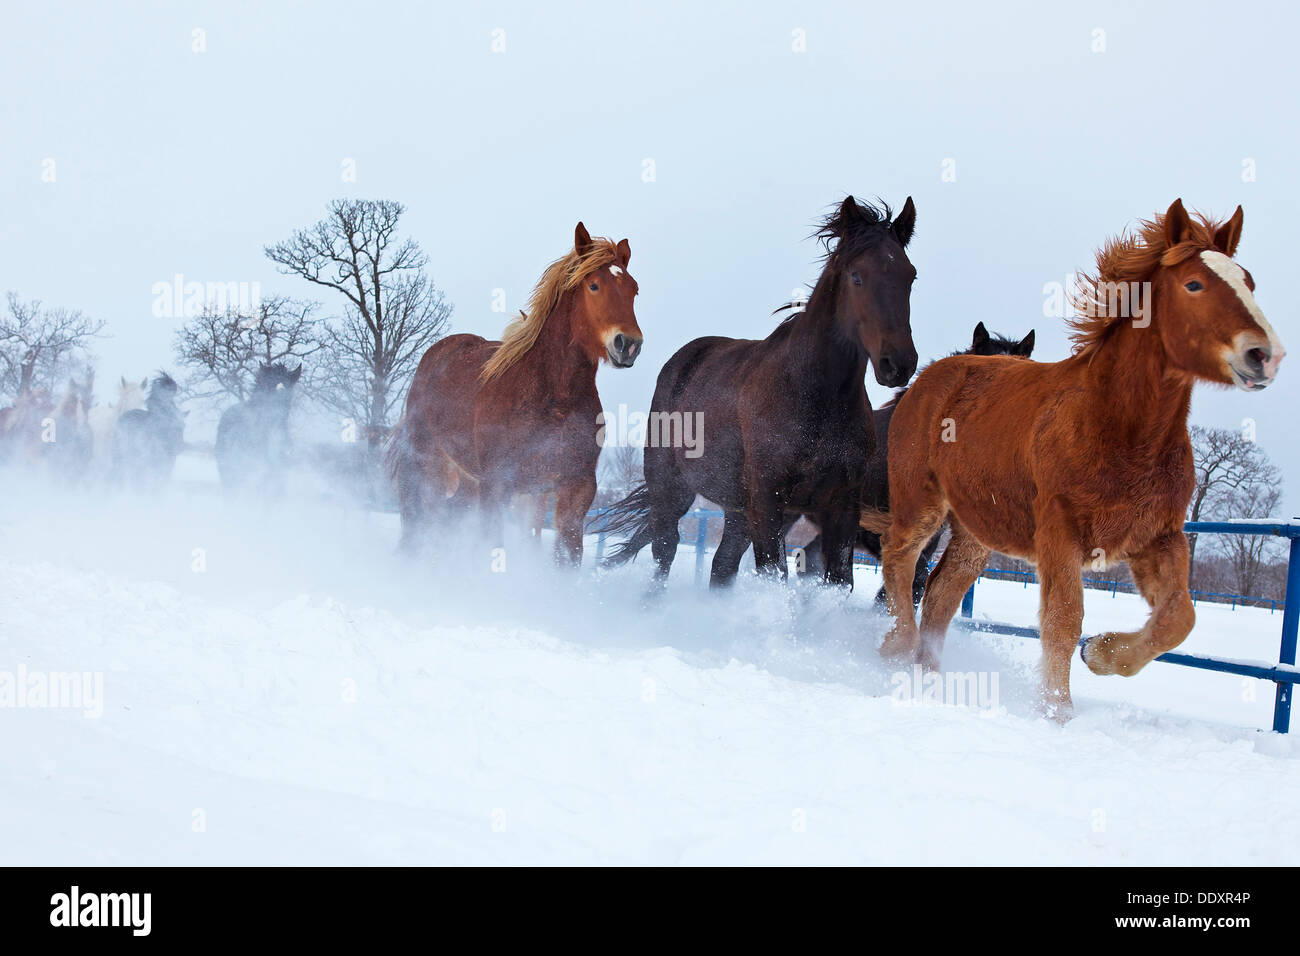 Horses running in the snow, Hokkaido Stock Photo